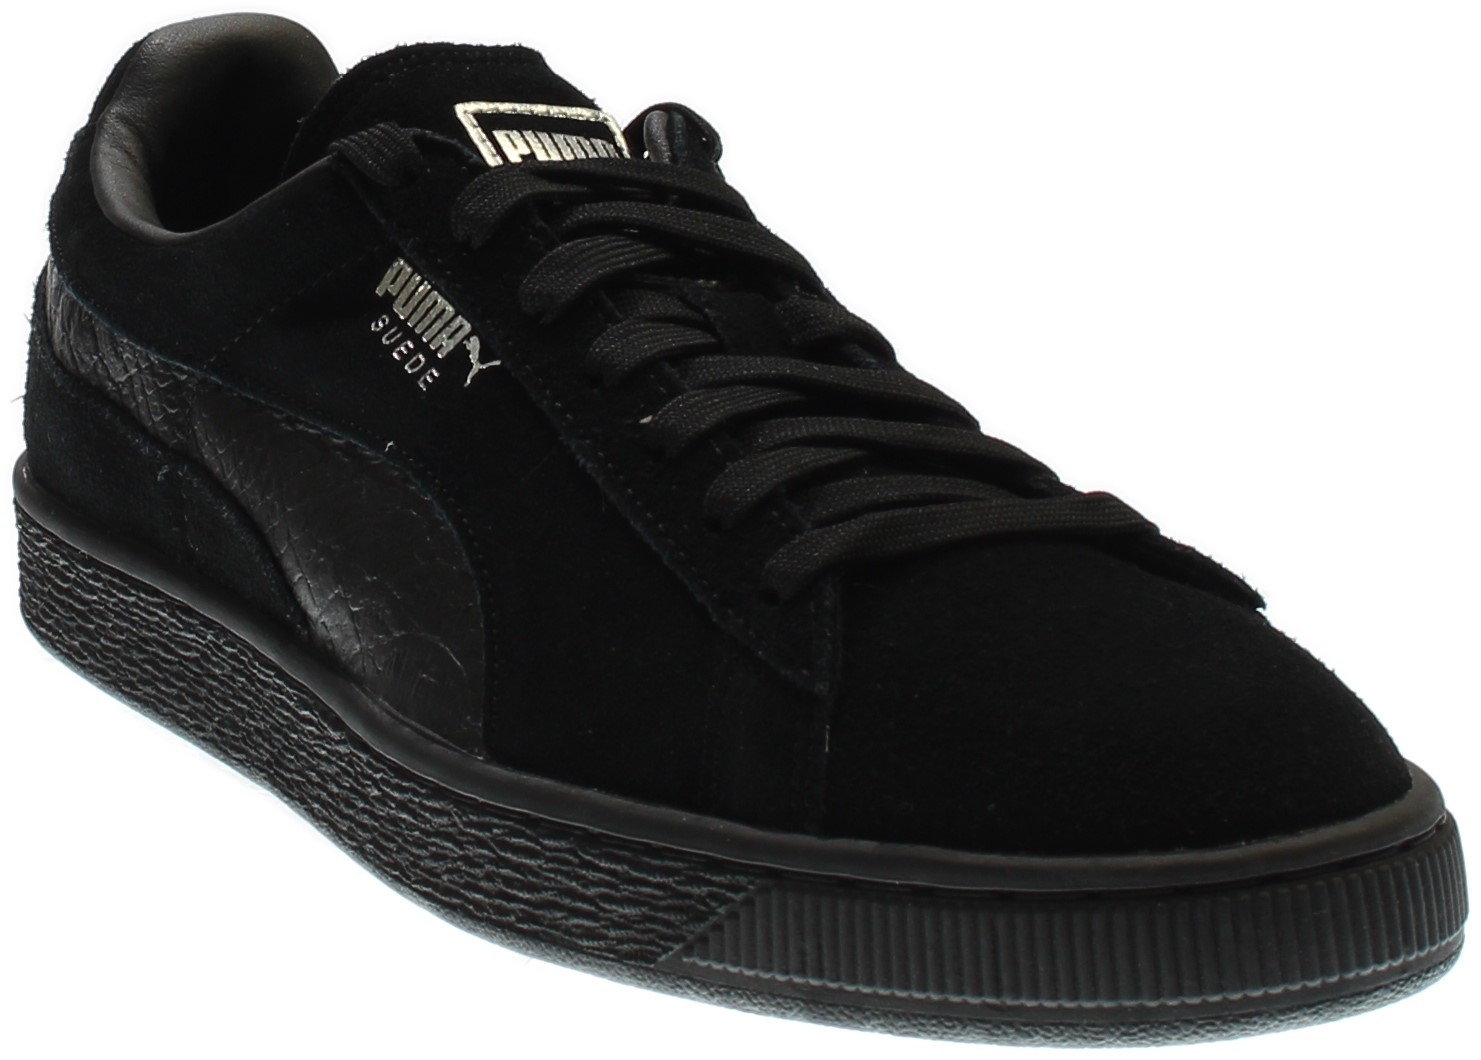 PUMA 363164-06 : Men's Suede Classic Mono Reptile Fashion Sneaker, Black (Puma Black-puma Silv, 9 D(M) US) - image 1 of 7